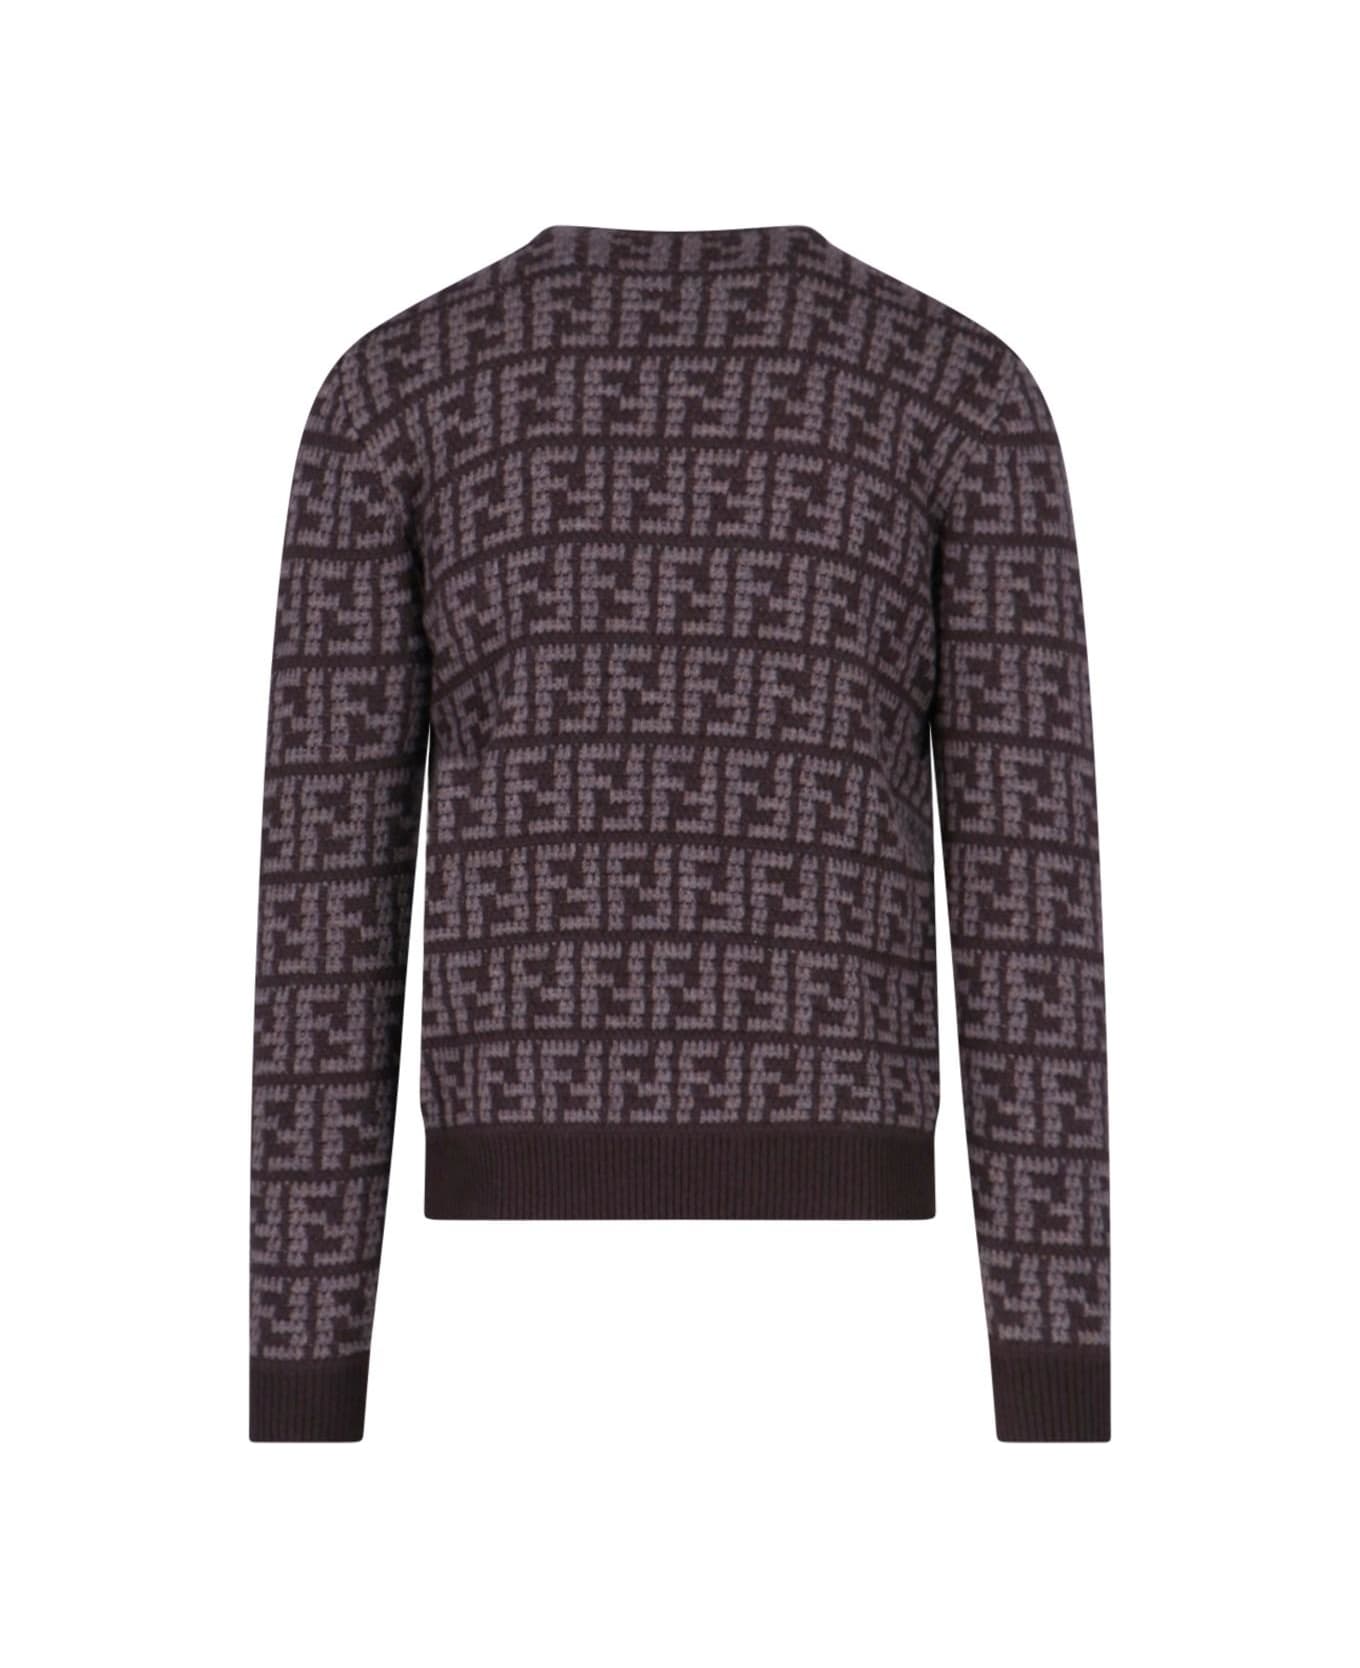 Fendi Embroidered Cashmere Sweater - Cordovan Pecan